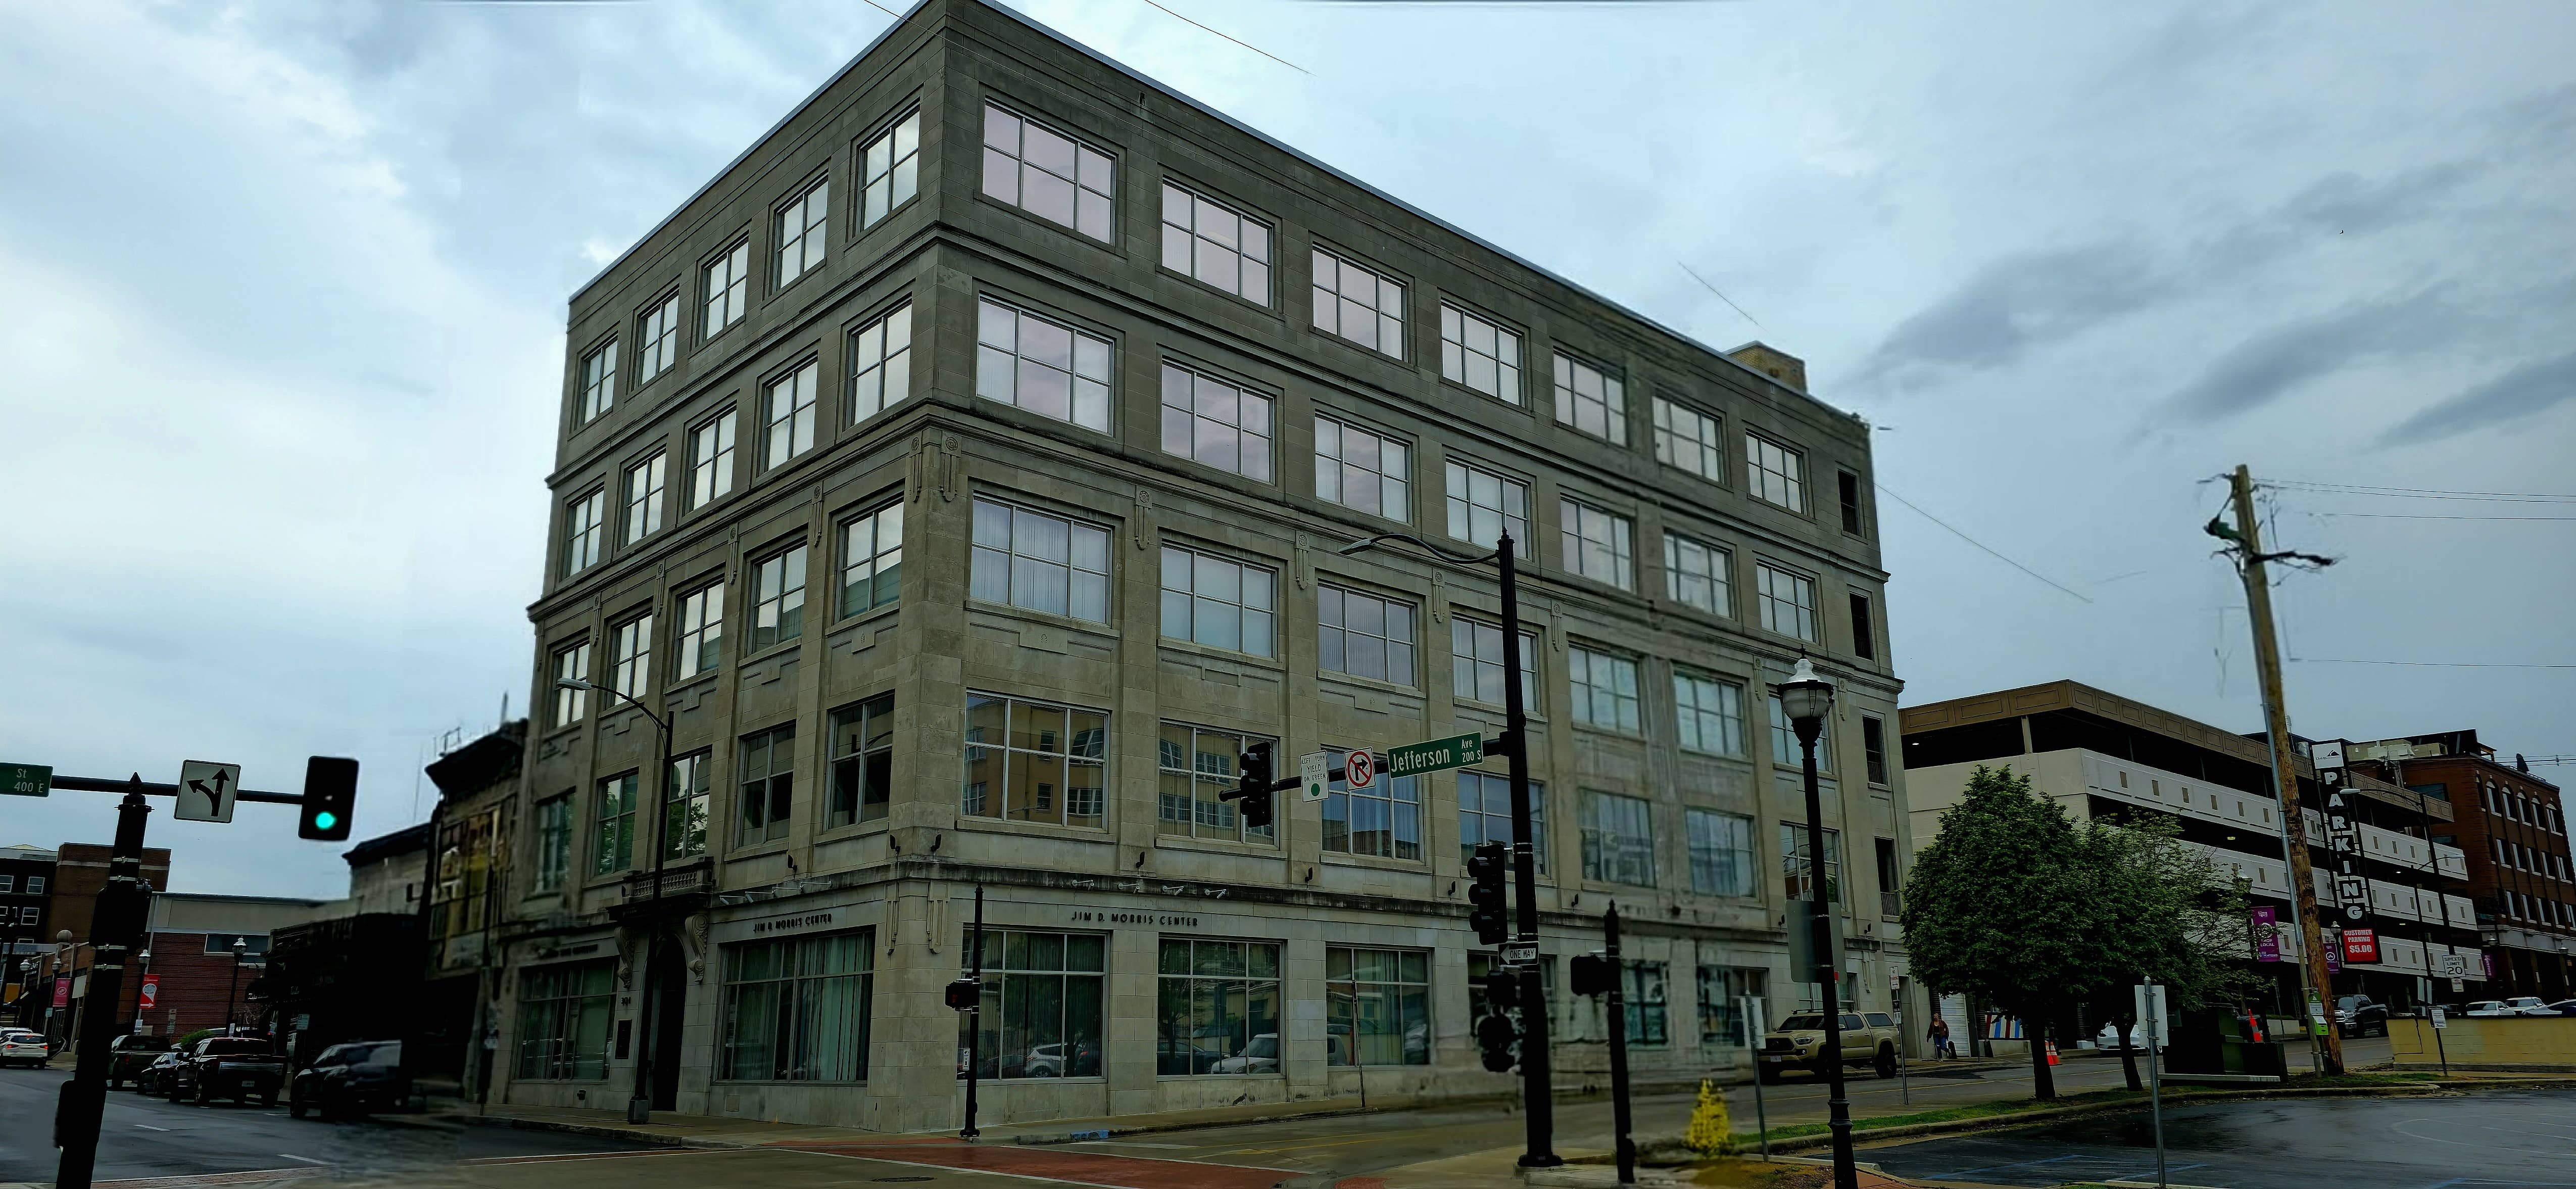 Picture of Jim D. Morris Center building